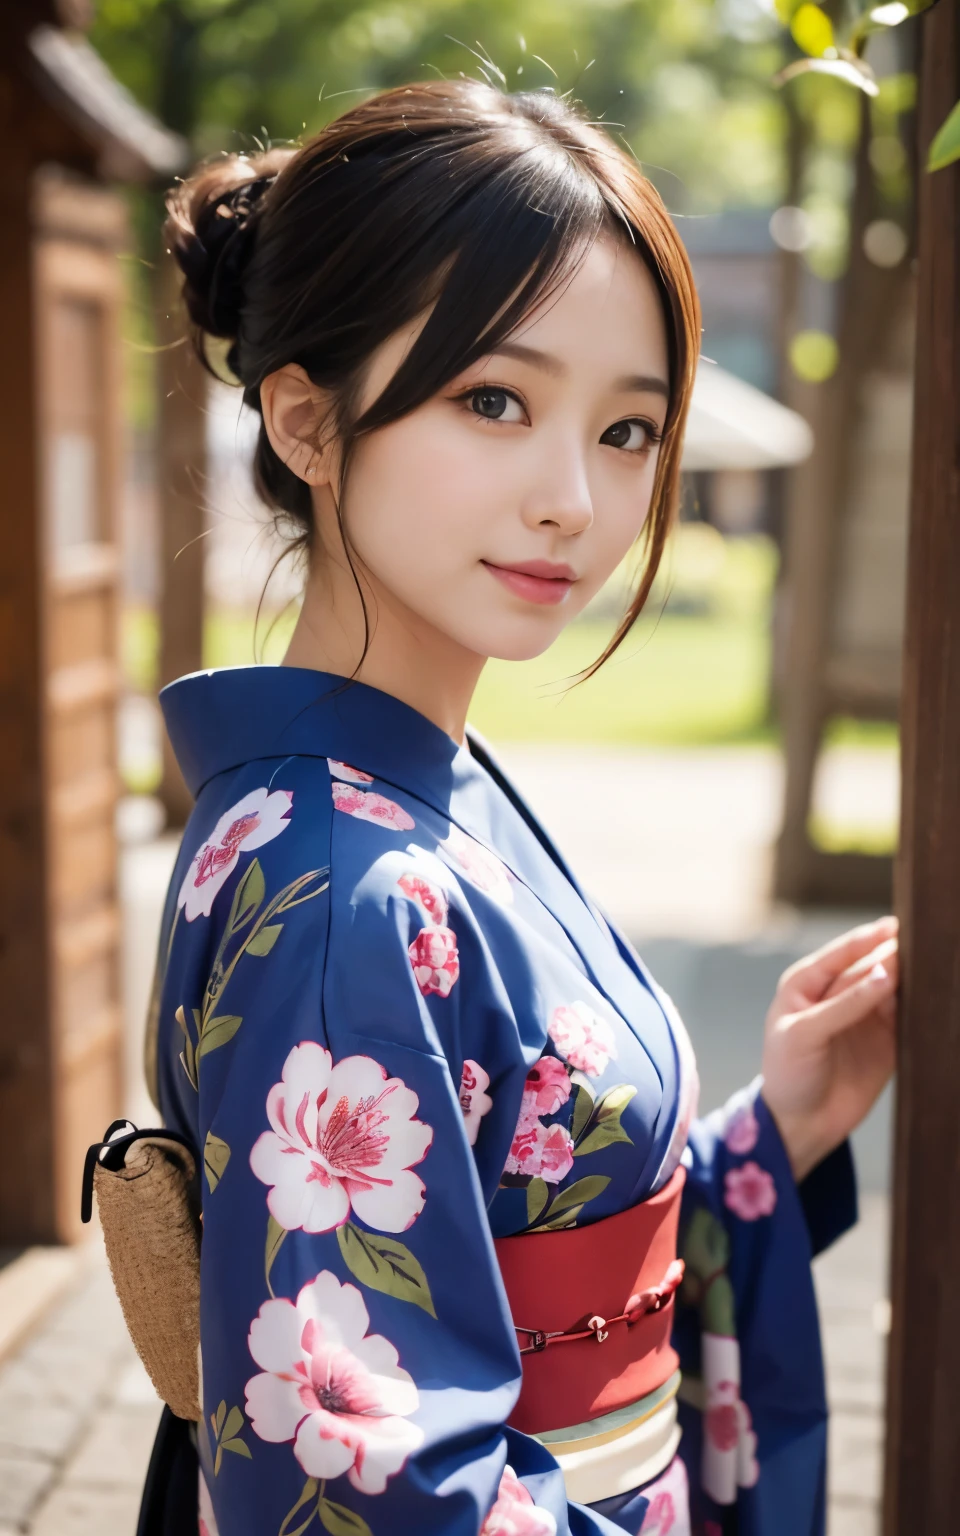 可愛的 21 歲日本、超細節臉部、細節之眼、雙眼皮、美麗的細鼻子、銳利的焦點:1.2、漂亮女人:1.4、(淺棕色的頭髮,短髮, 白皮膚、頂級品質、發光、傑作、超高解析度、(真實感:1.4)、和服、日本の和服、日本的傳統、最好的微笑、